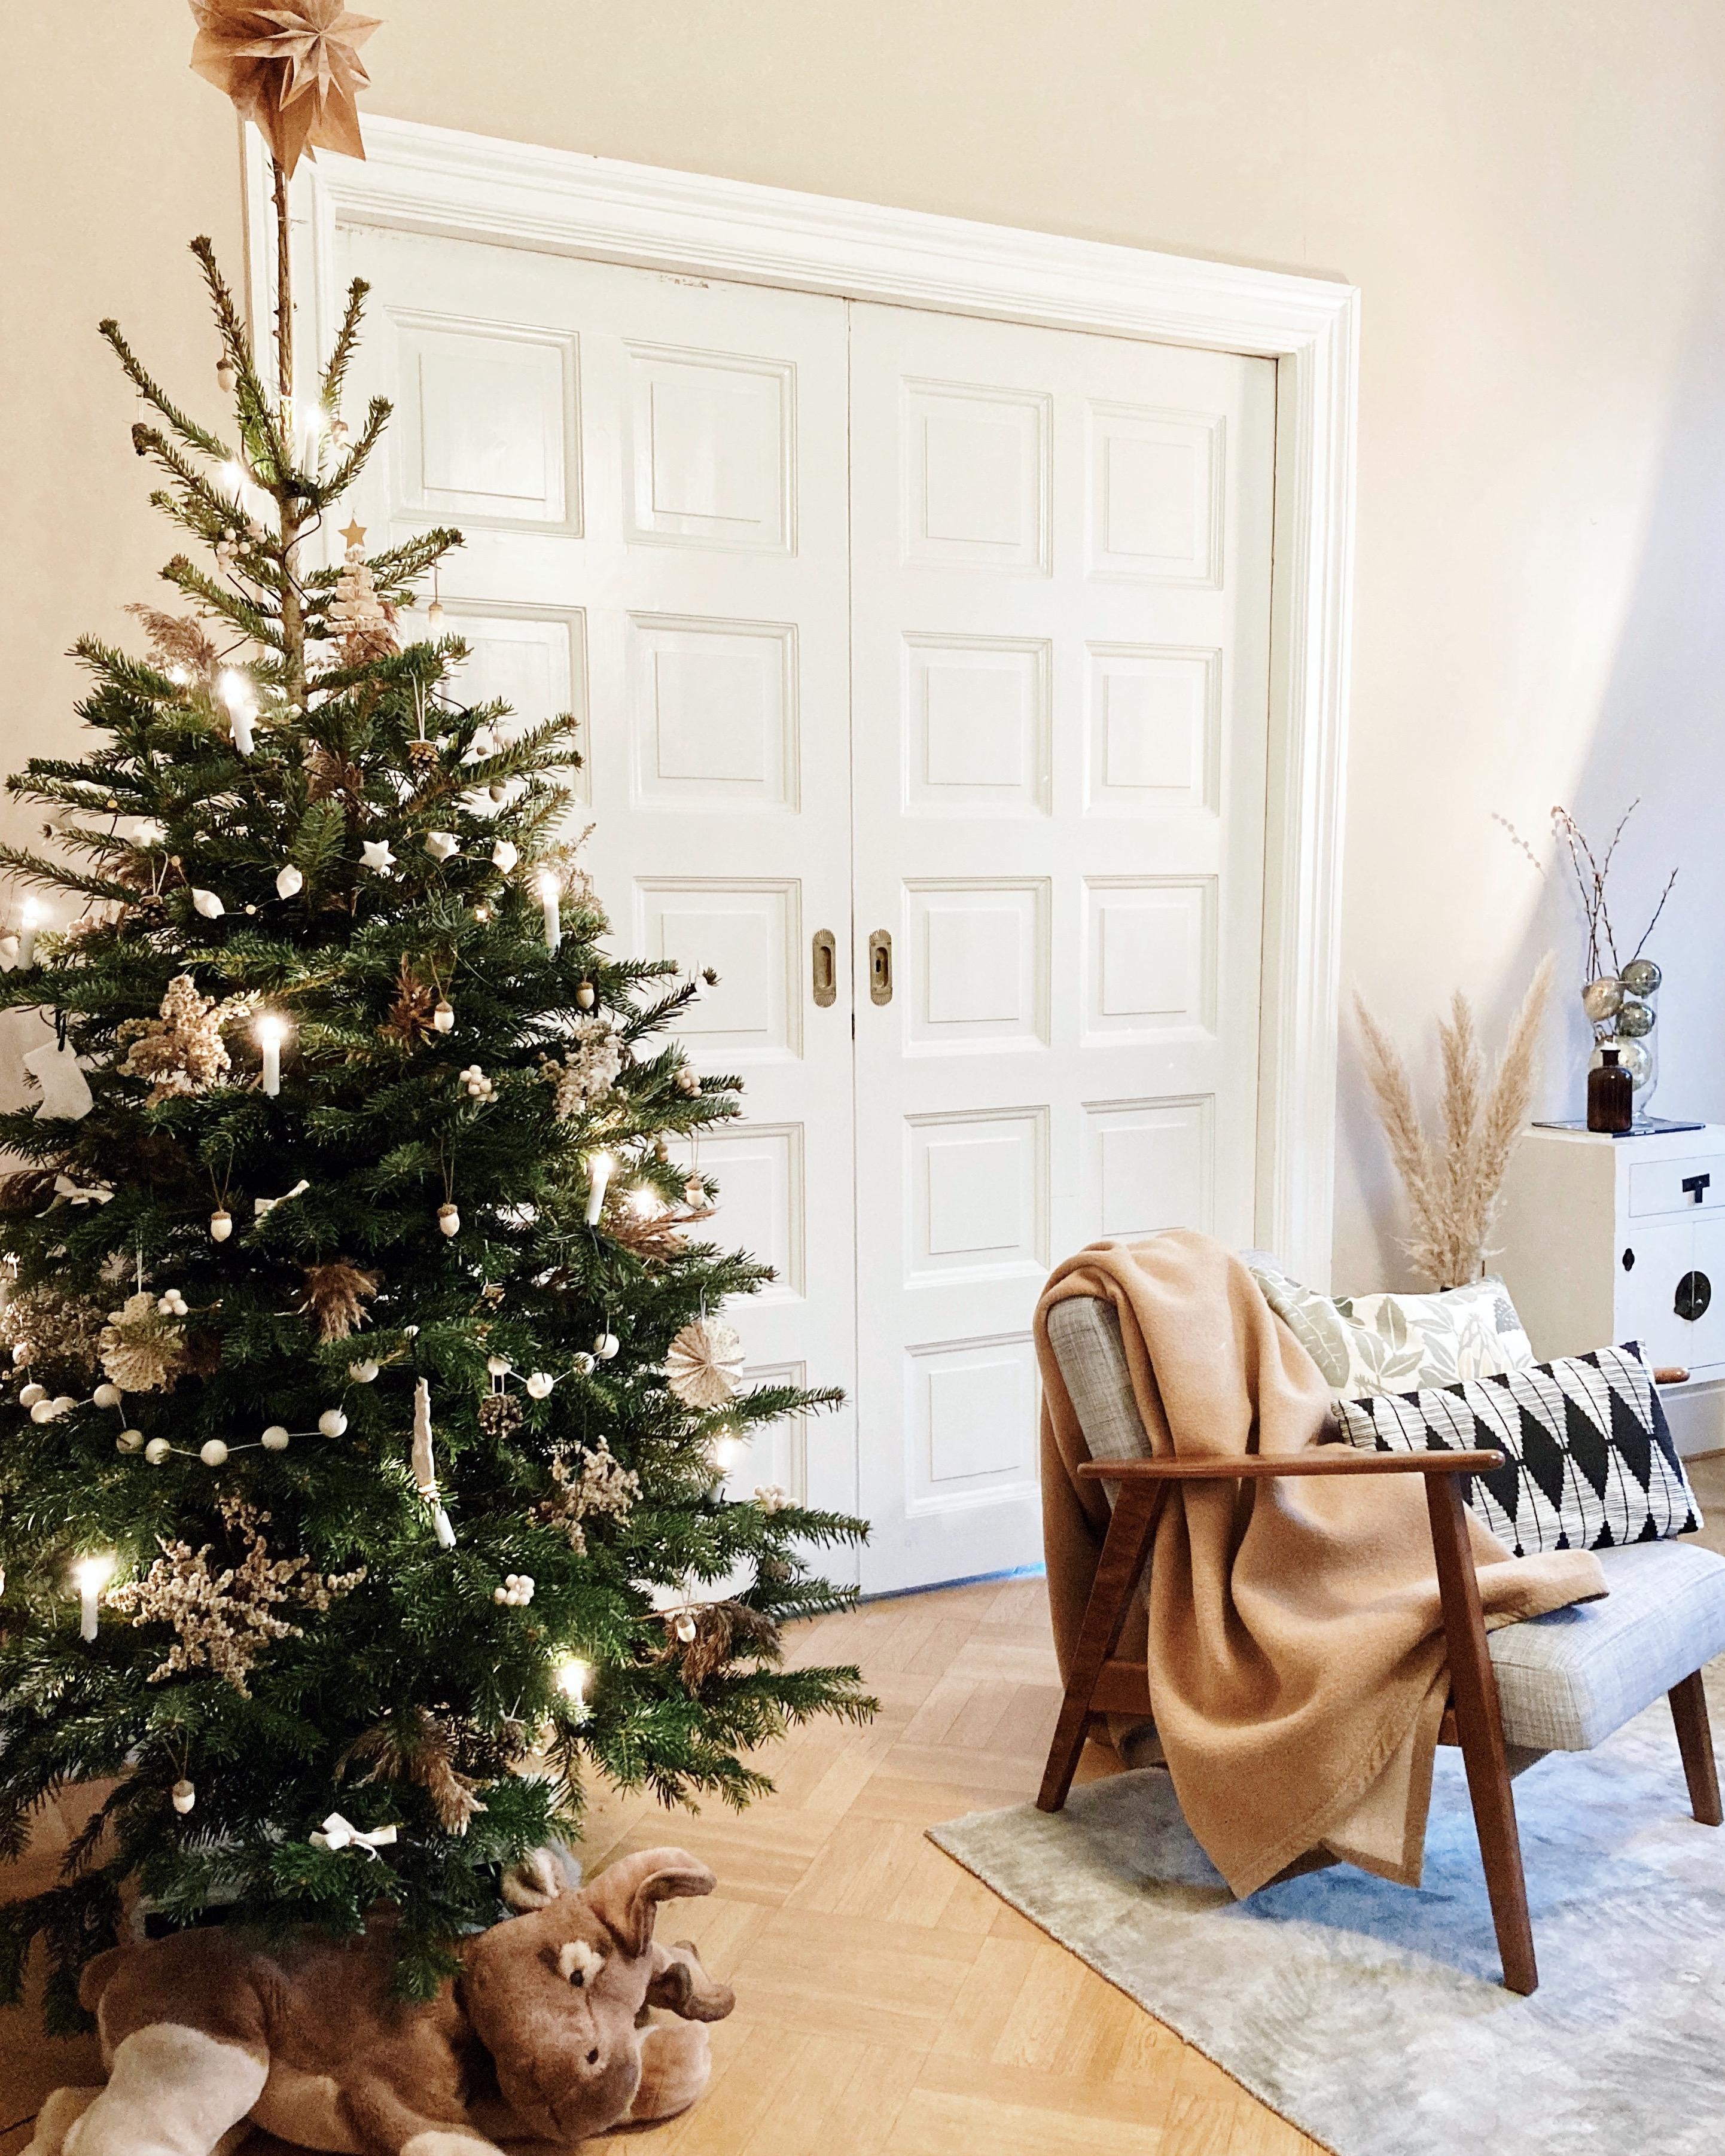 Unser erster eigener Weihnachtsbaum als kleine Family in Schweden! #weihnachtsbaum #skanihome 